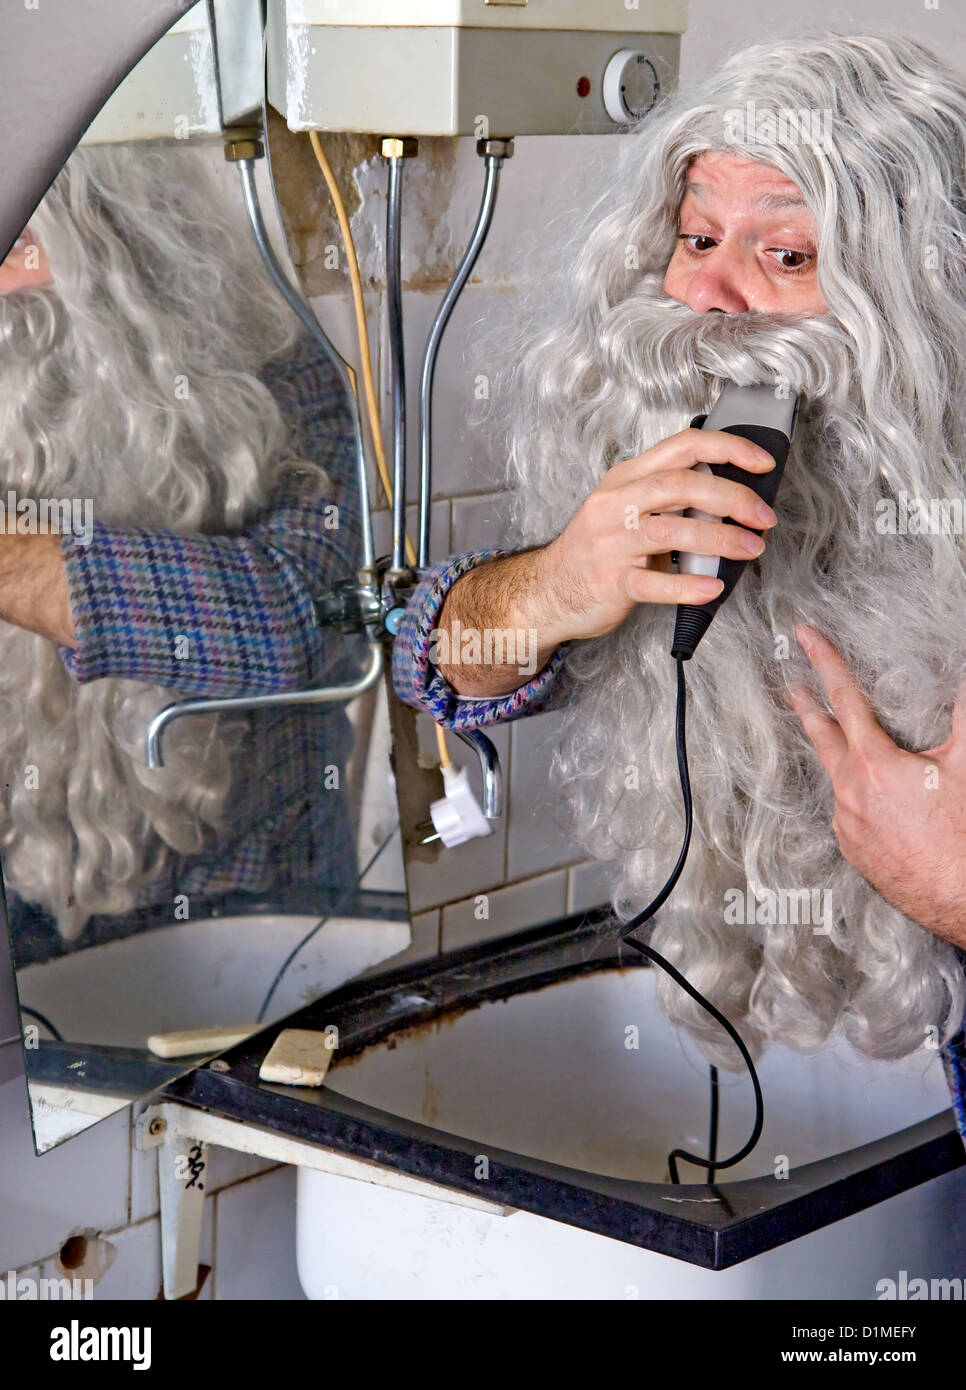 man adjusts his beard Stock Photo